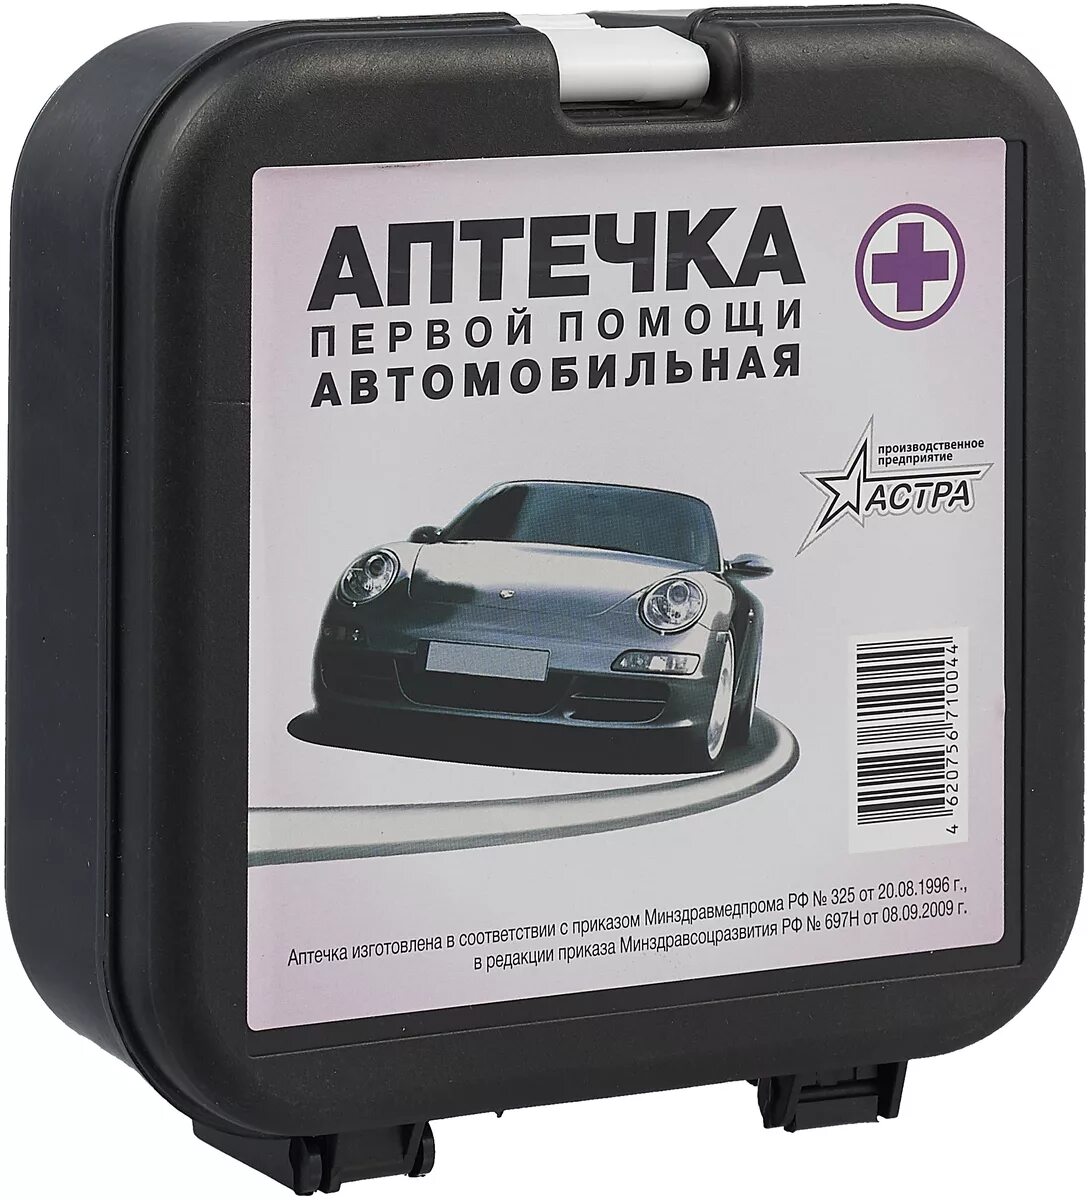 Аптечка автомобильная Astra-Люкс новый состав.